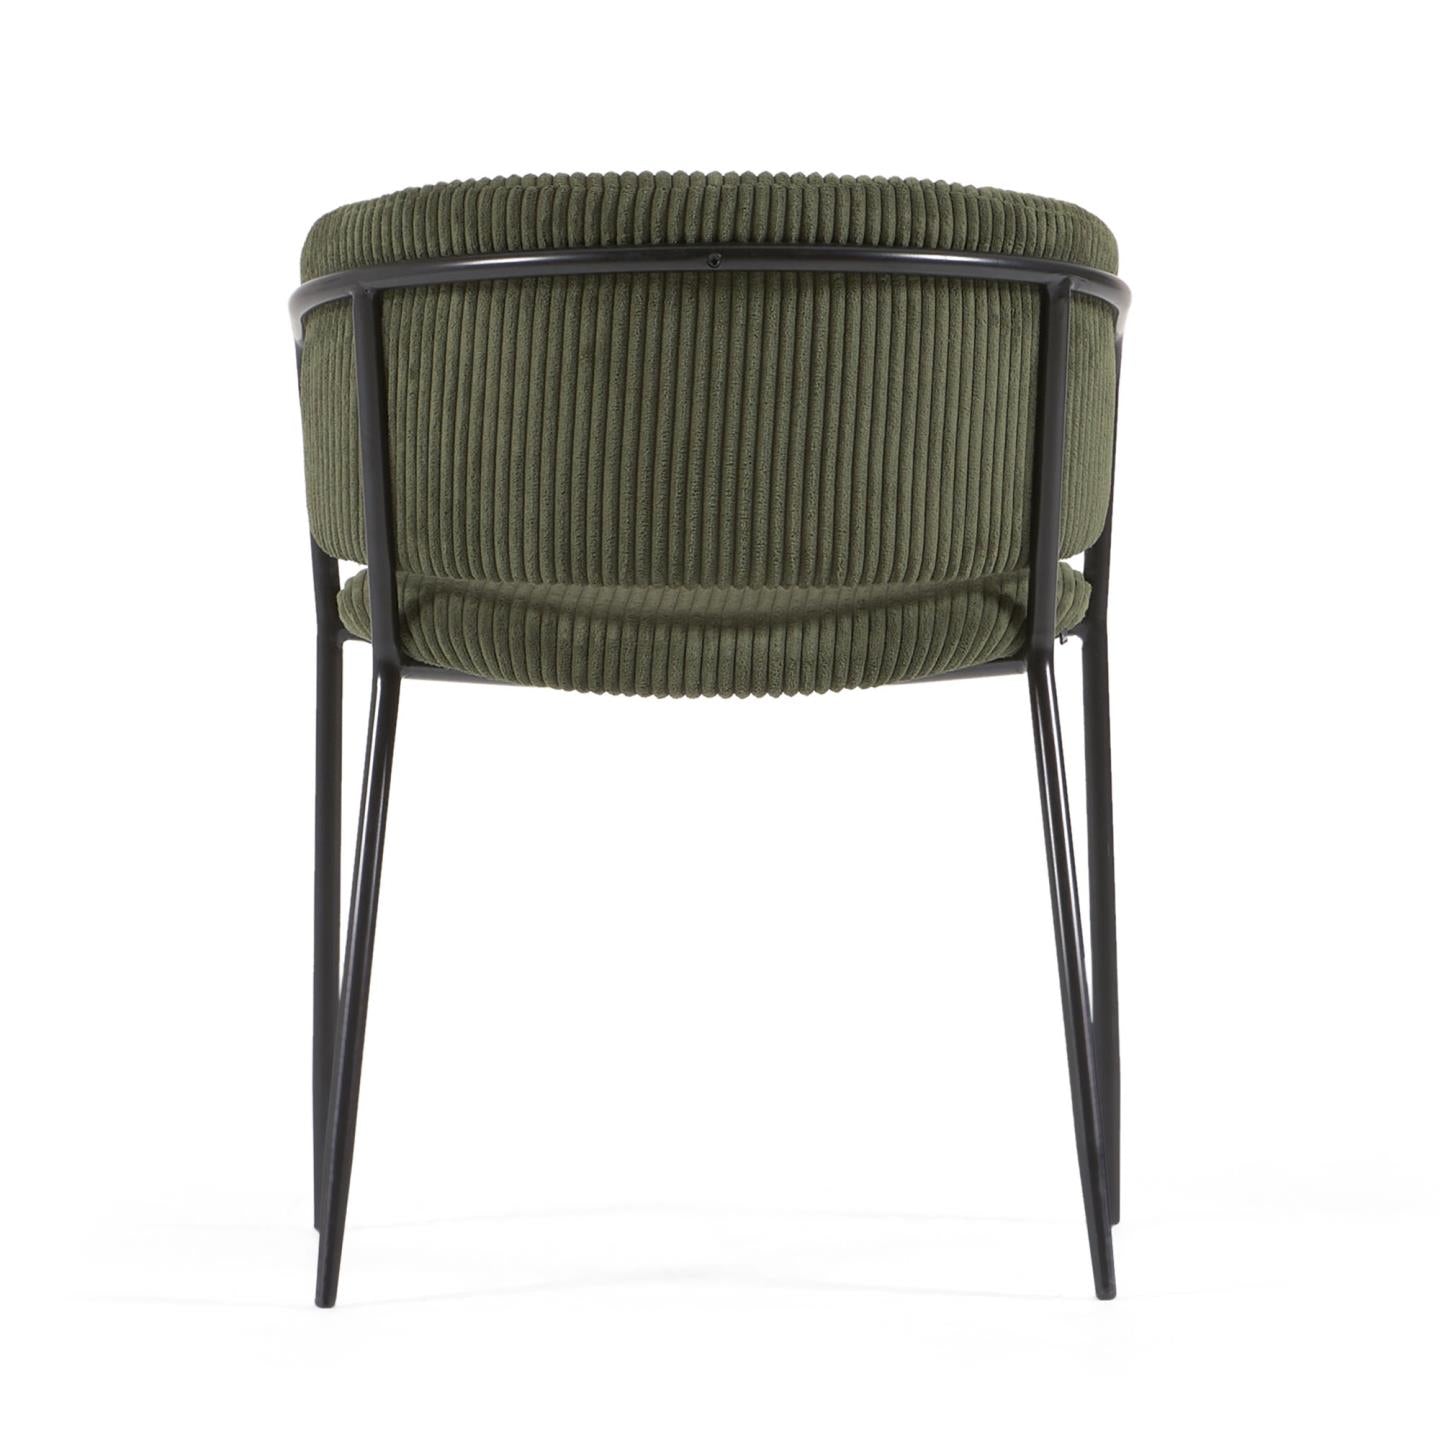 Runnie szék sötétzöld, széles varrású kordbársonyból és fekete acéllábakból készült.